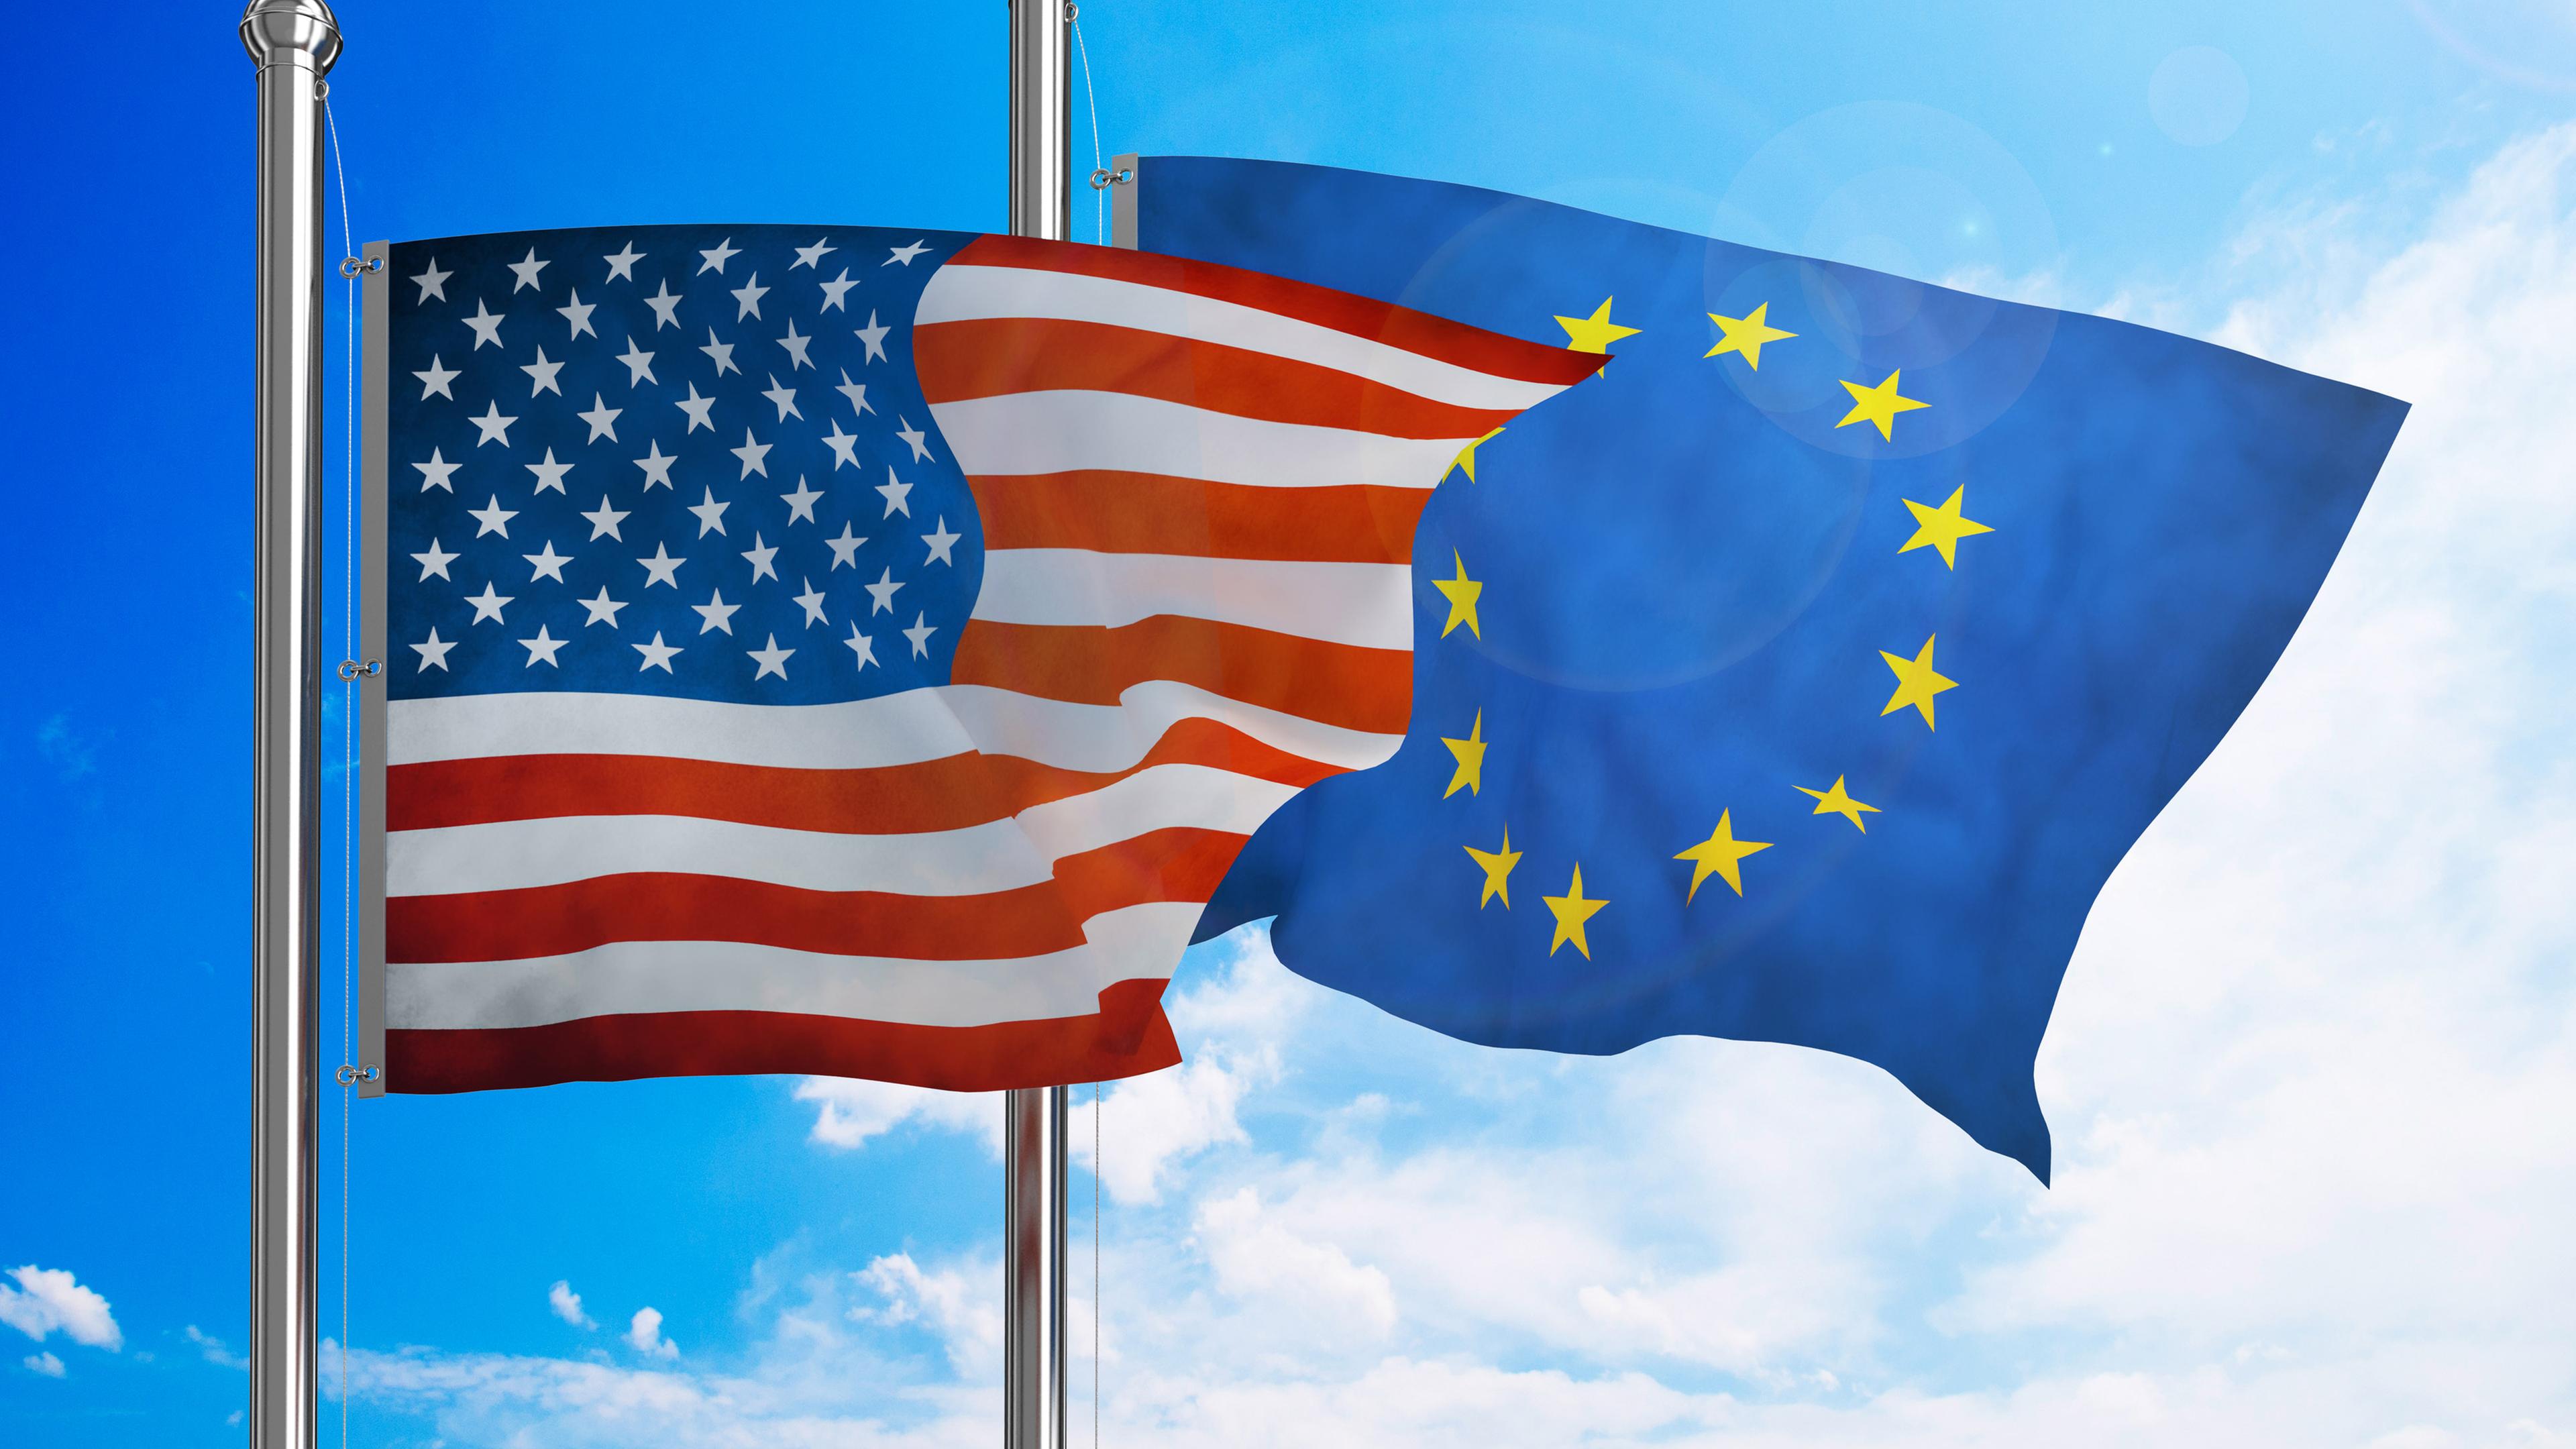 Евросоюз страны сша. Флаг США И Евросоюза. США И ЕС. США И Европа. Флаг Европы и США.